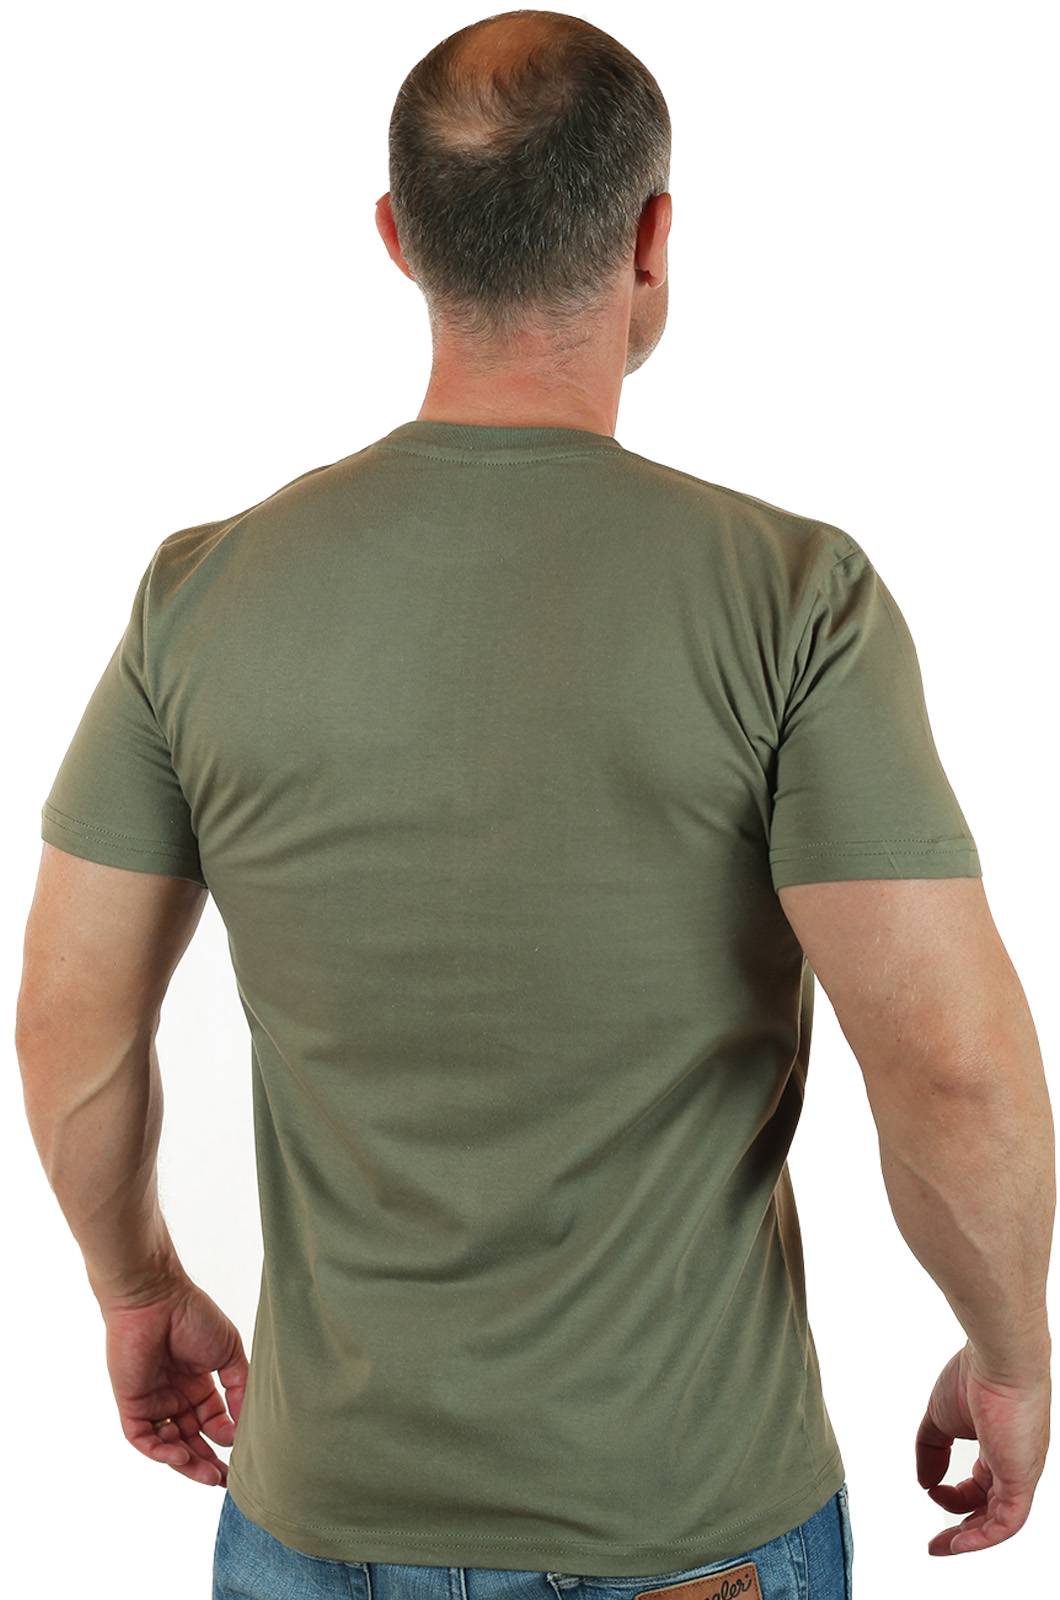 Мужская военная футболка РХБЗ с вышитой нашивкой